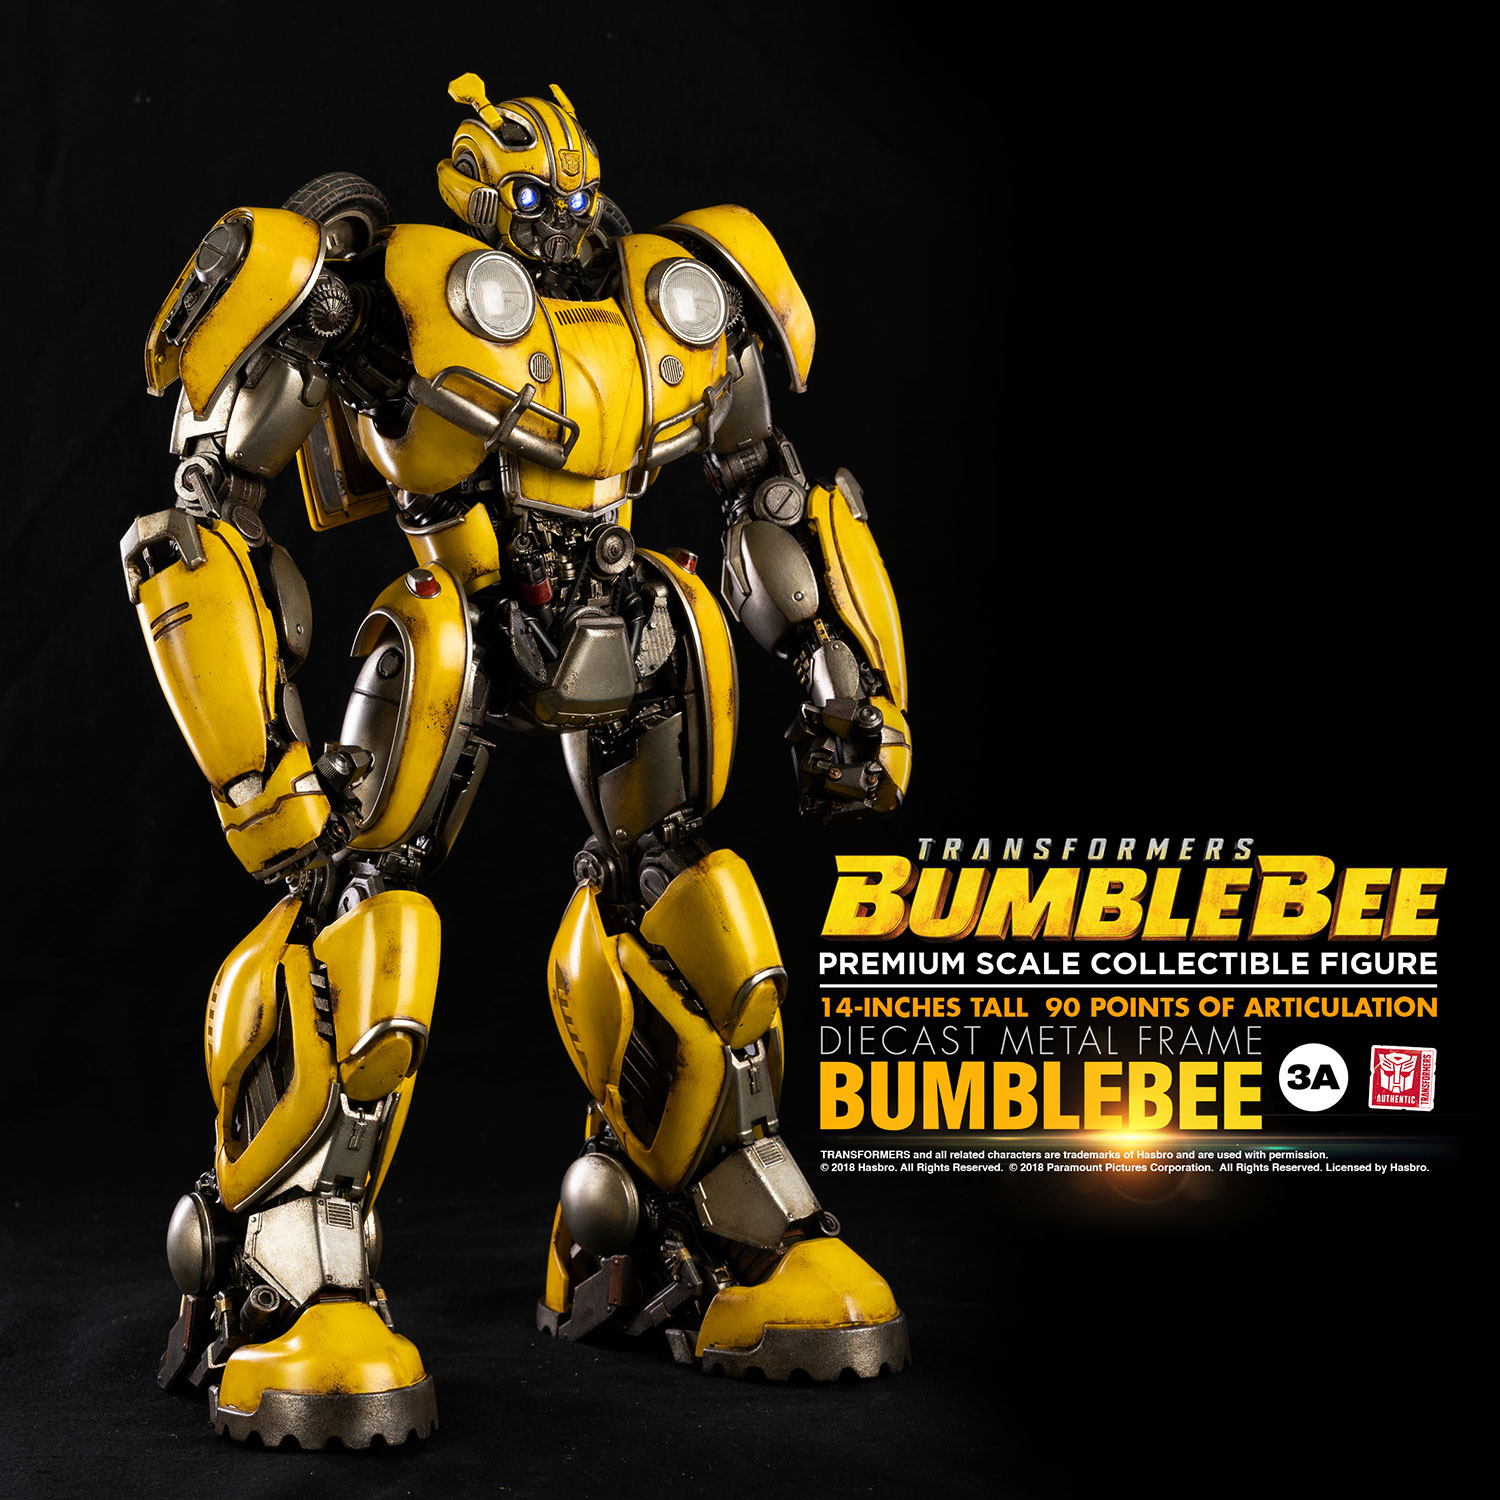 Bumblebee cast